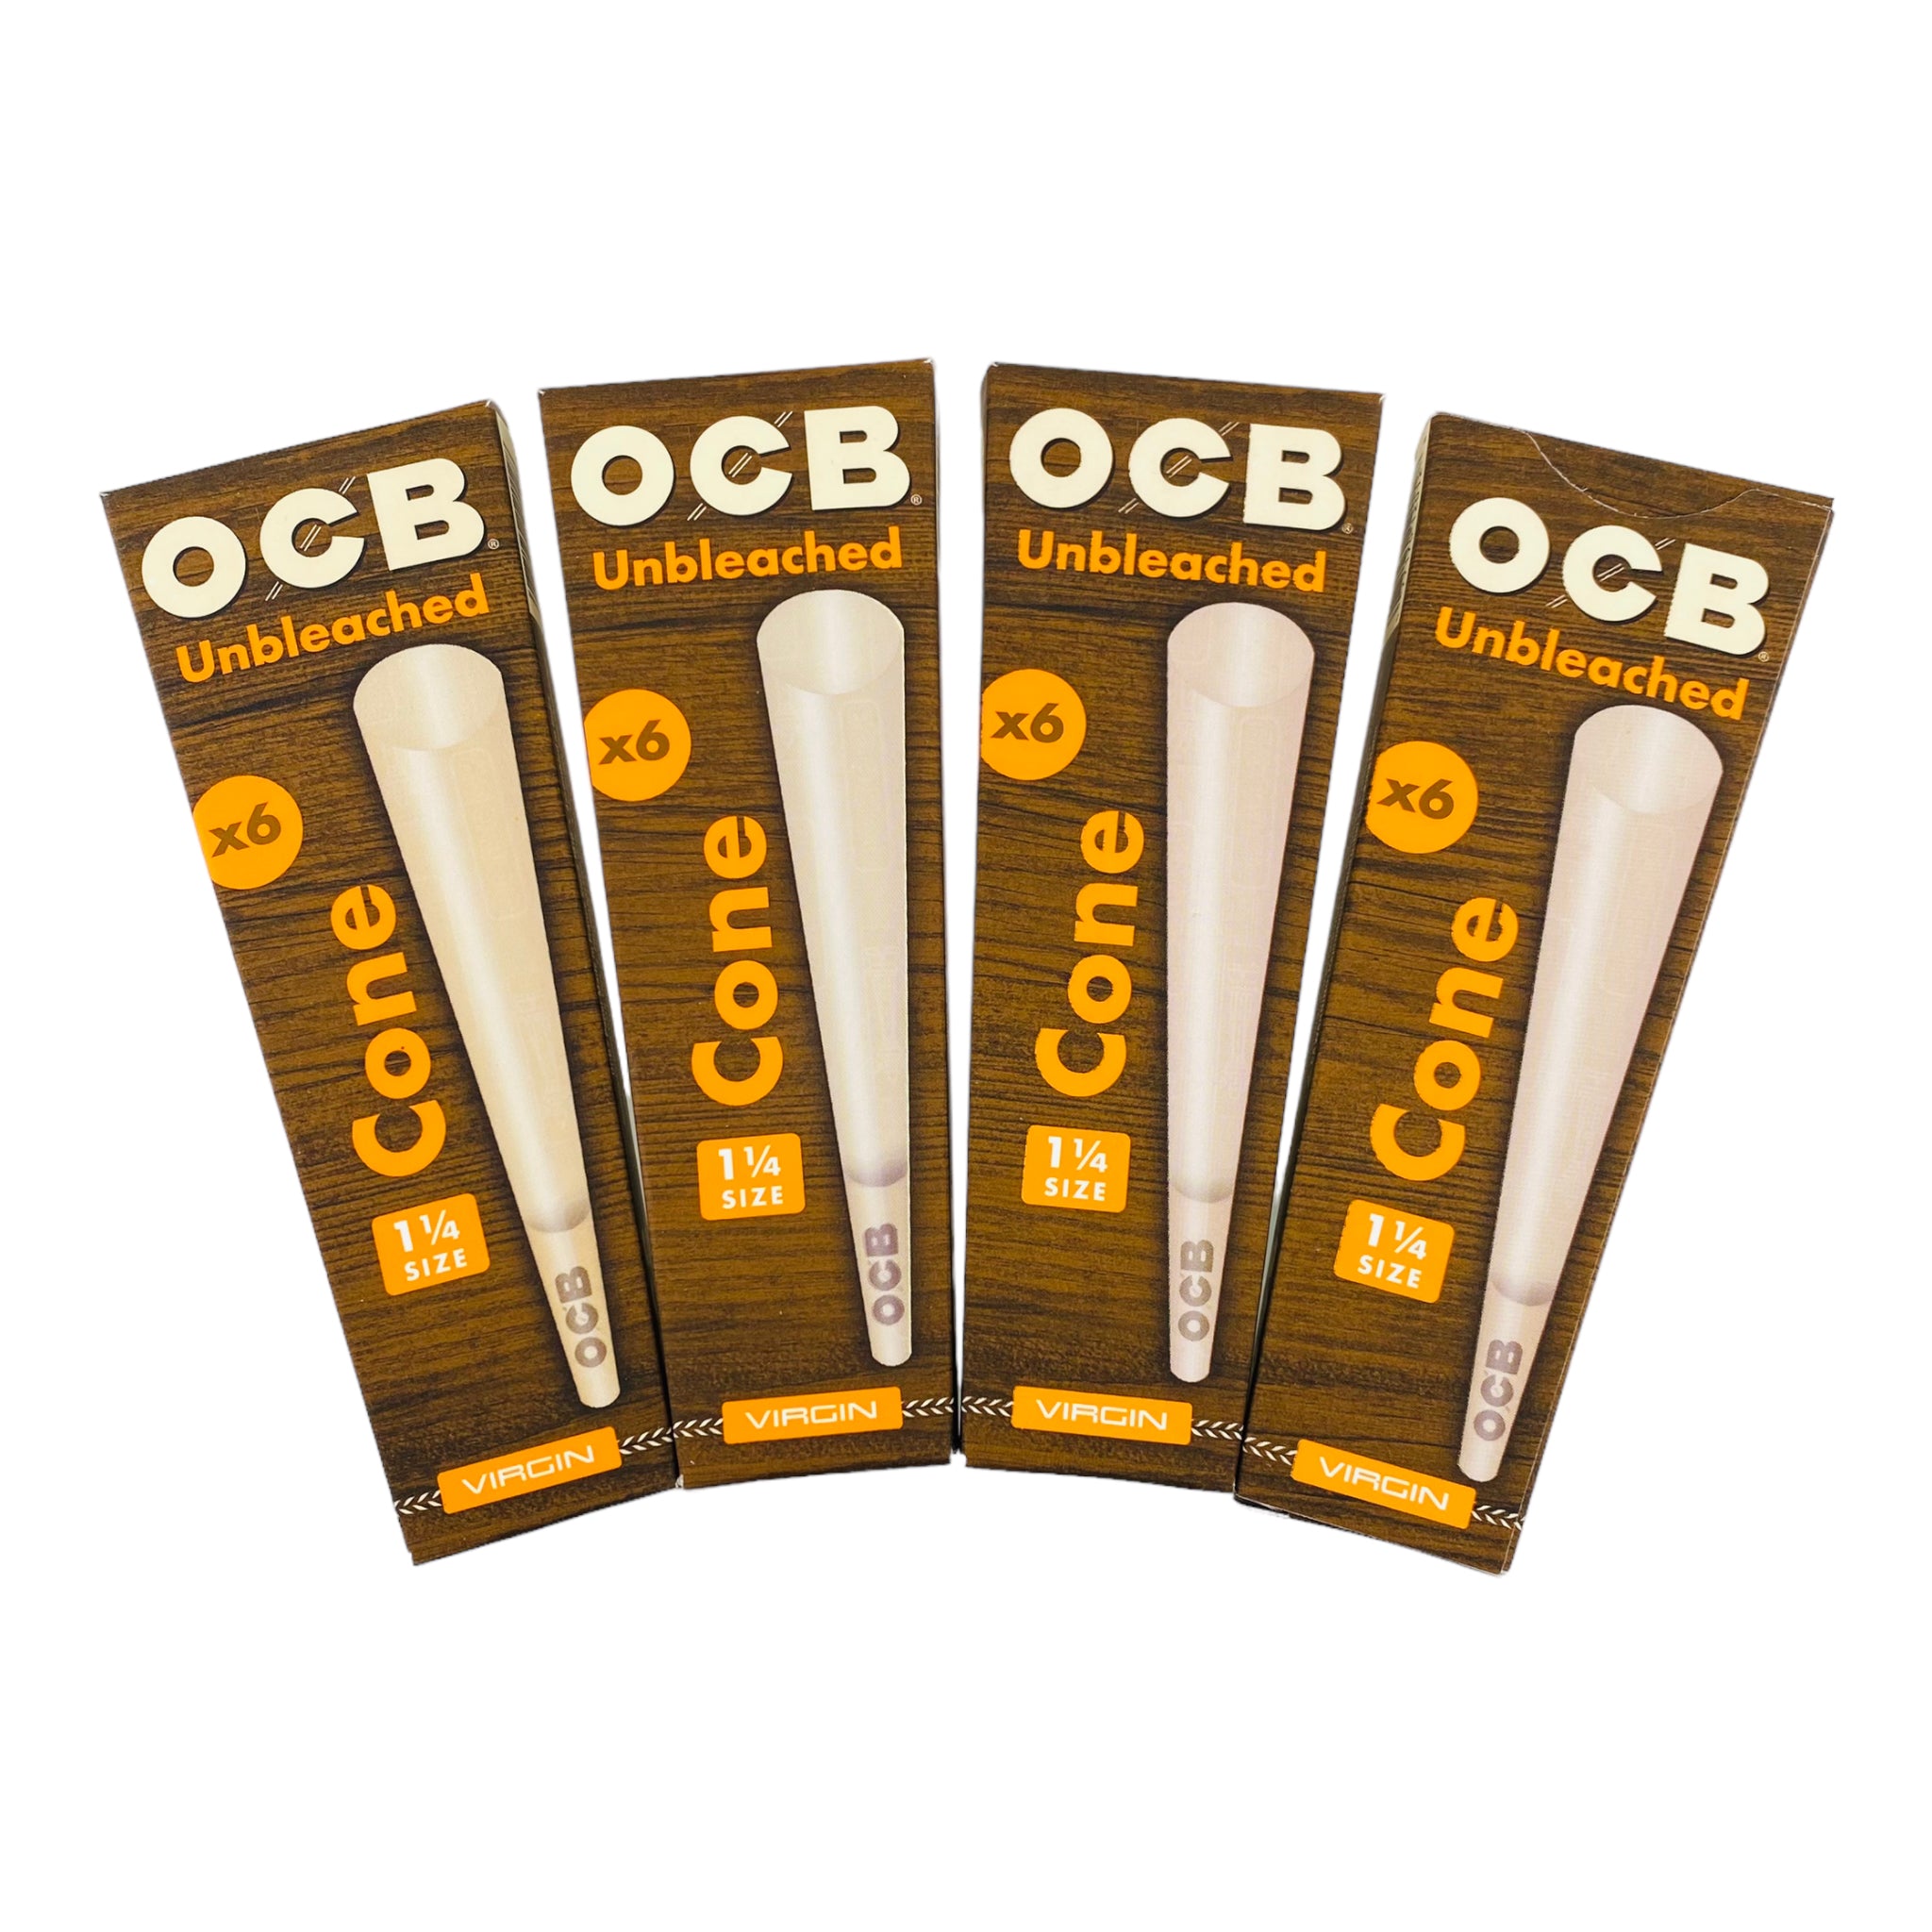 OCB 1-1/4 Unbleached Cones